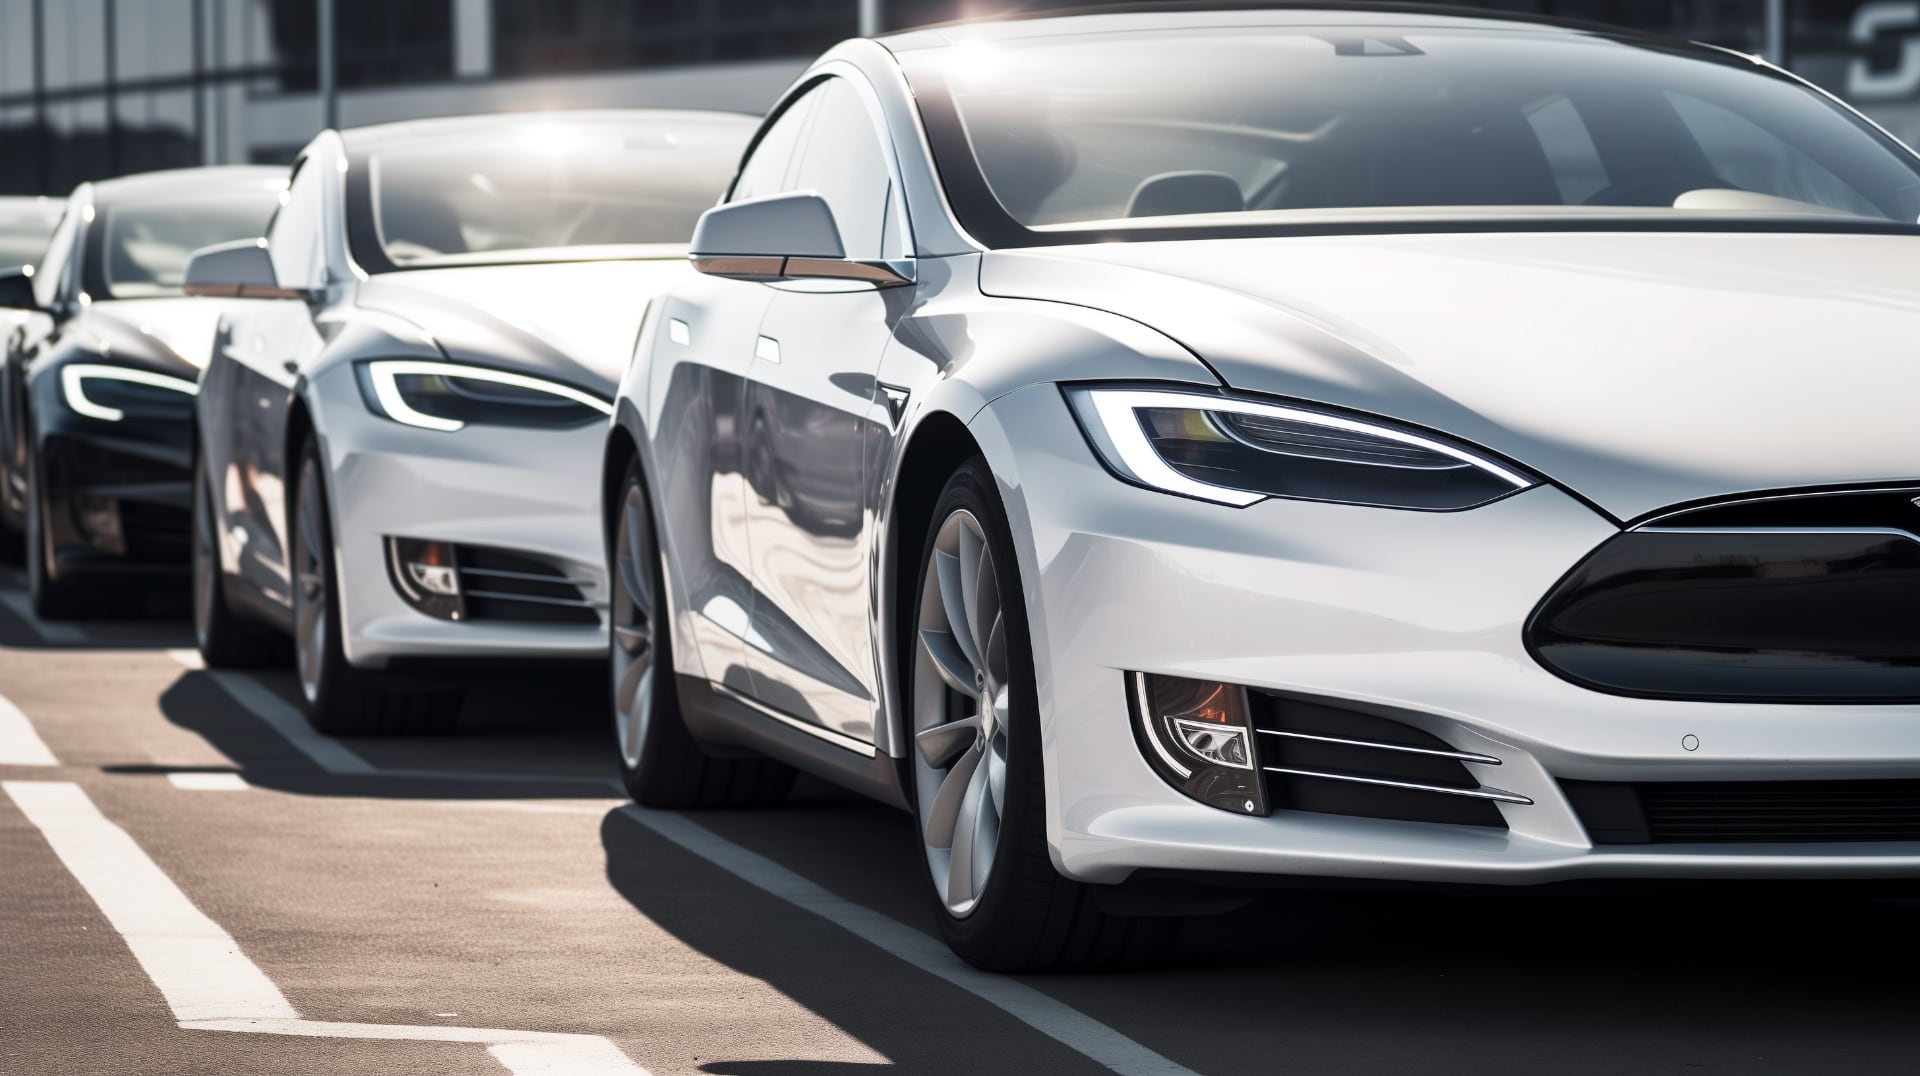 Tesla återkallar 120 000 bilar i USA på grund av säkerhetsproblem med dörrar